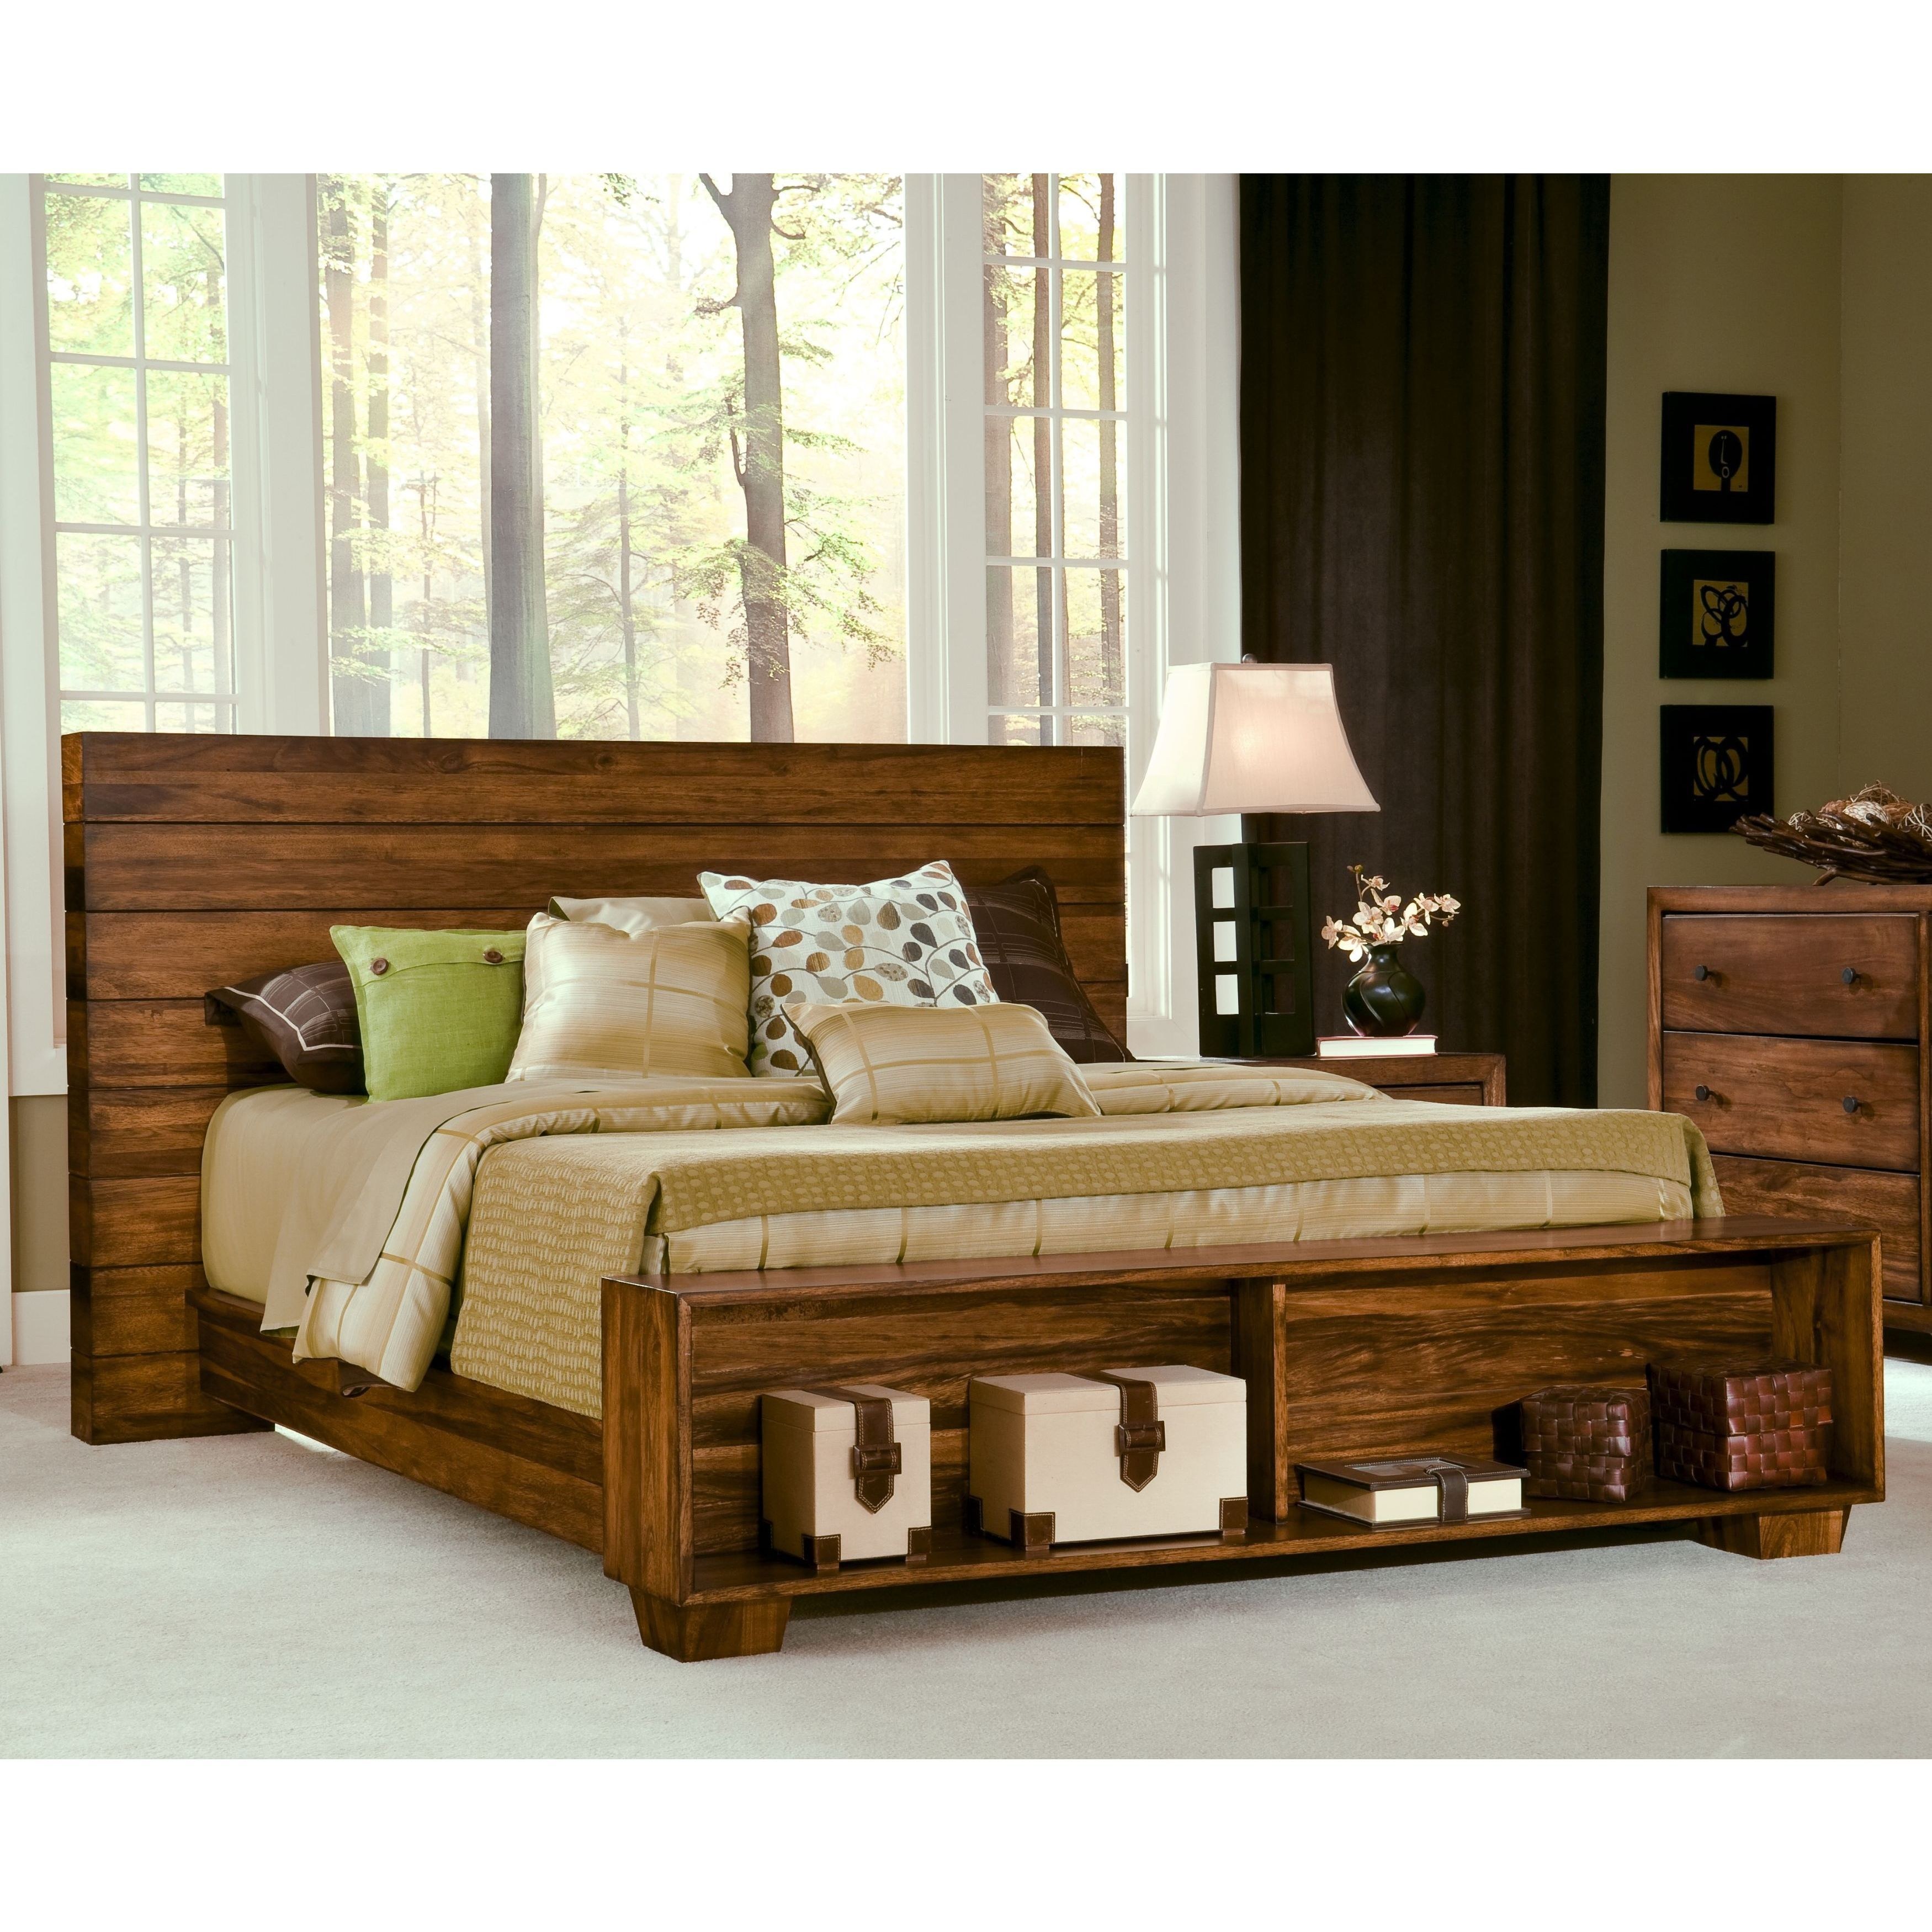 Wooden мебель. Мебельерра кровати из массива дерева. Кровати Кинг сайз из массива. Кровать "Паула".массив дуба. Стильные деревянные кровати.